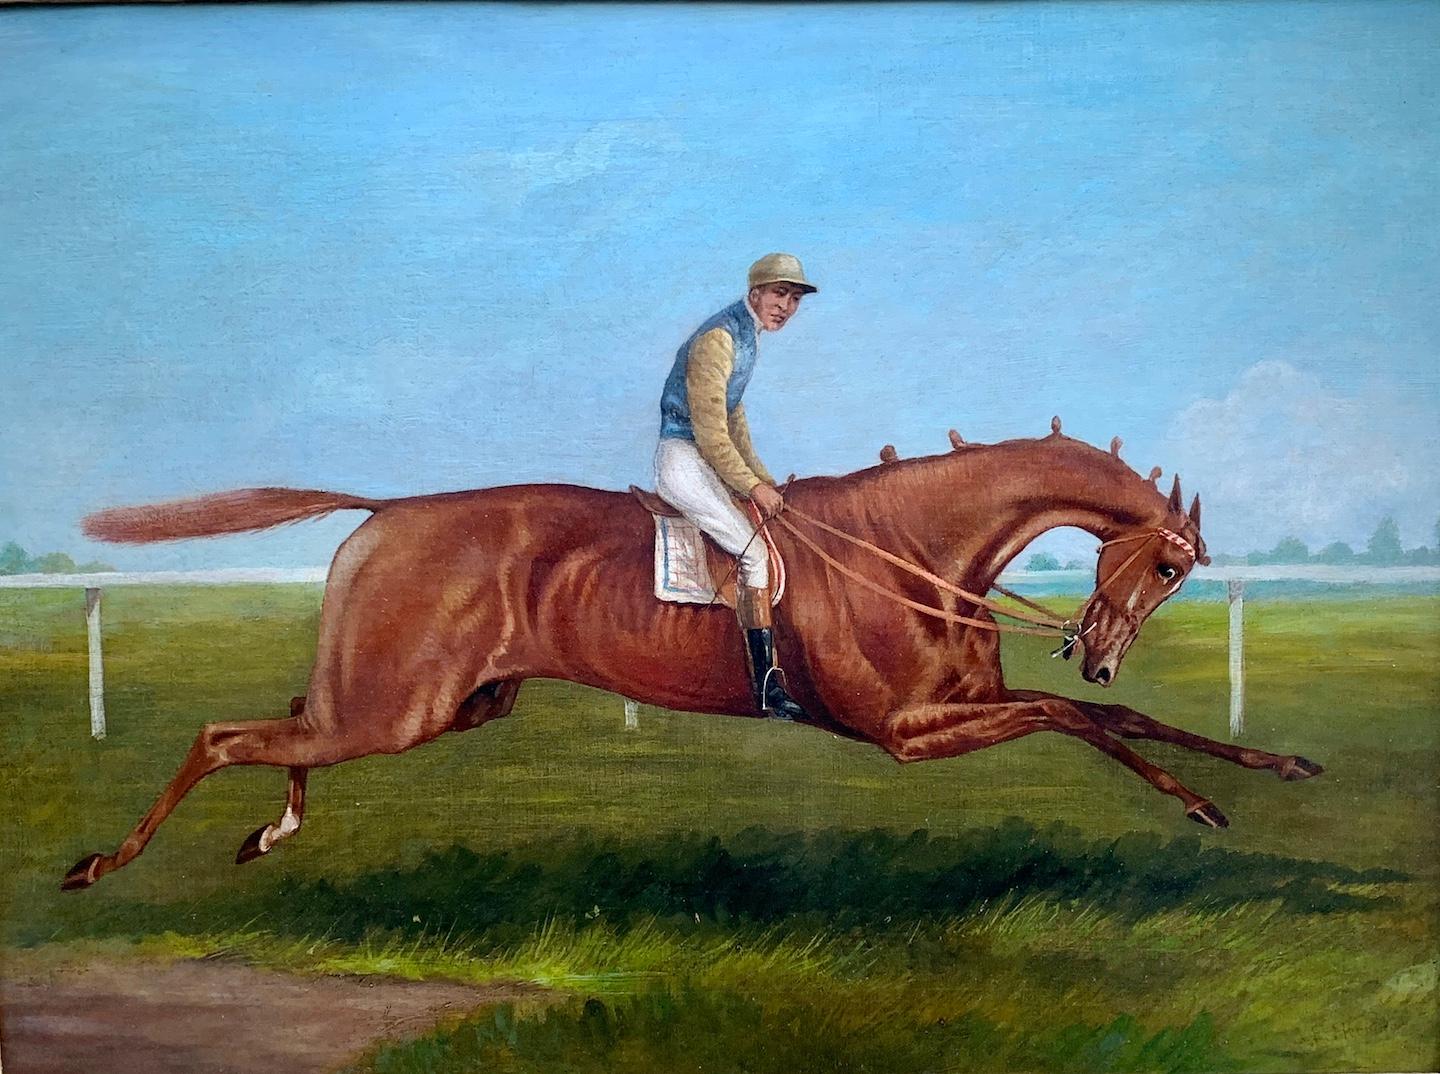  scène de course de chevaux ancienne anglaise du 19e siècle dans un paysage avec Jockey au sommet - Painting de John Frederick Herring Sr.